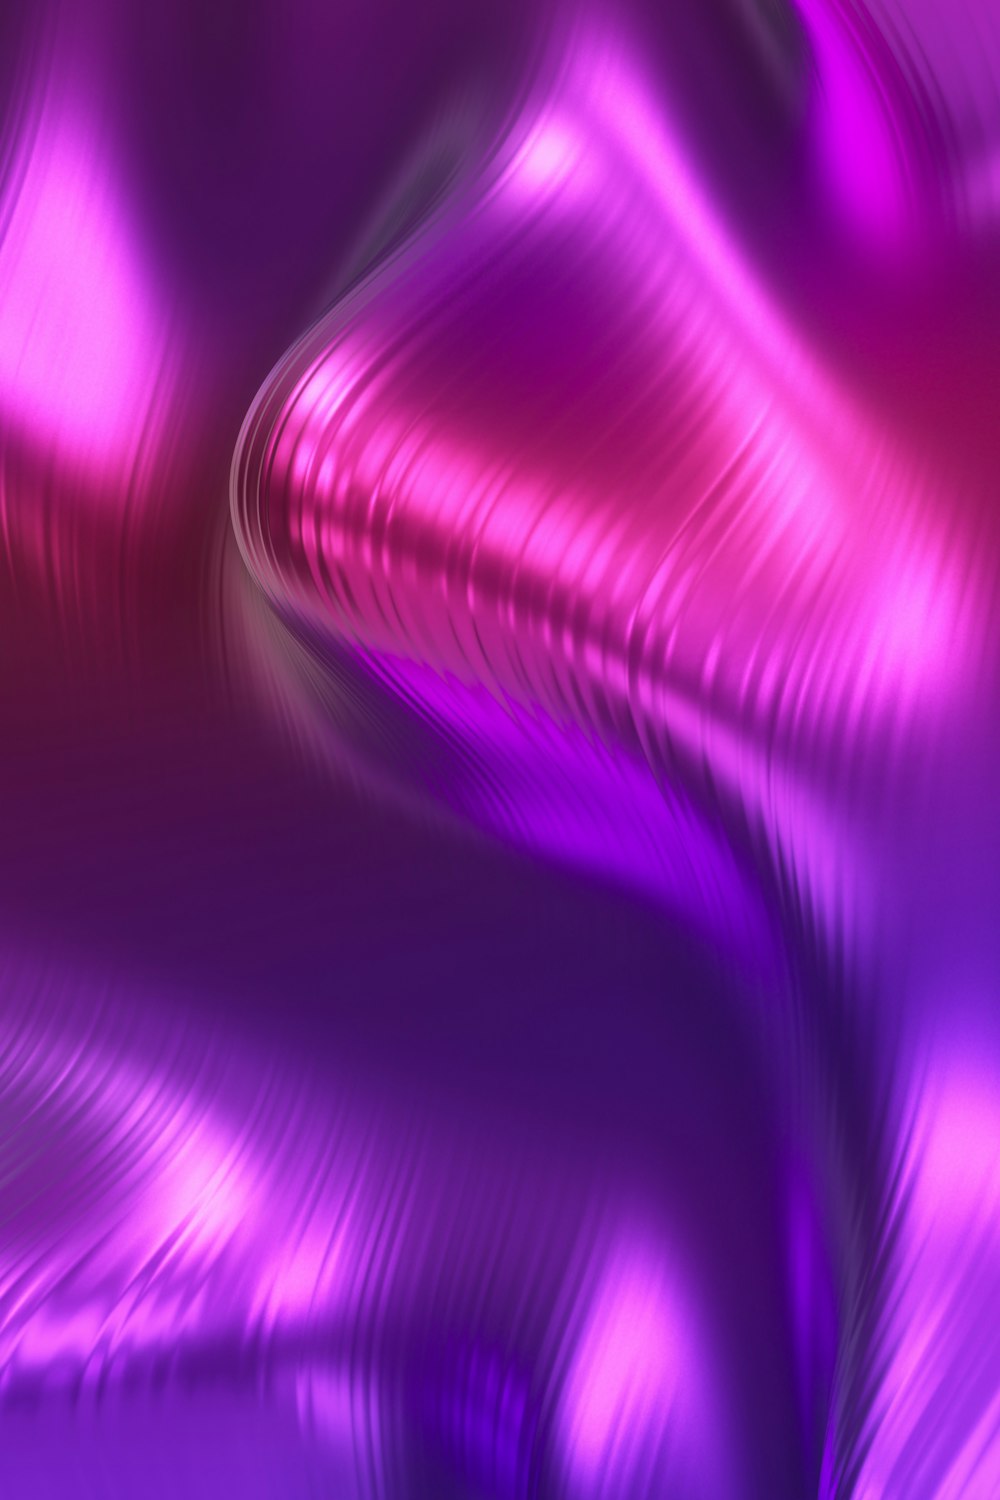 Với hình nền tím hồng thiết kế sóng ảnh đẹp mắt và hoàn toàn miễn phí, bạn sẽ có được một trải nghiệm đắm mình trong màu sắc tuyệt đẹp. Đây là một lựa chọn tuyệt vời cho bất kỳ ai muốn sở hữu một hình nền thú vị và độc đáo trên máy tính của mình.